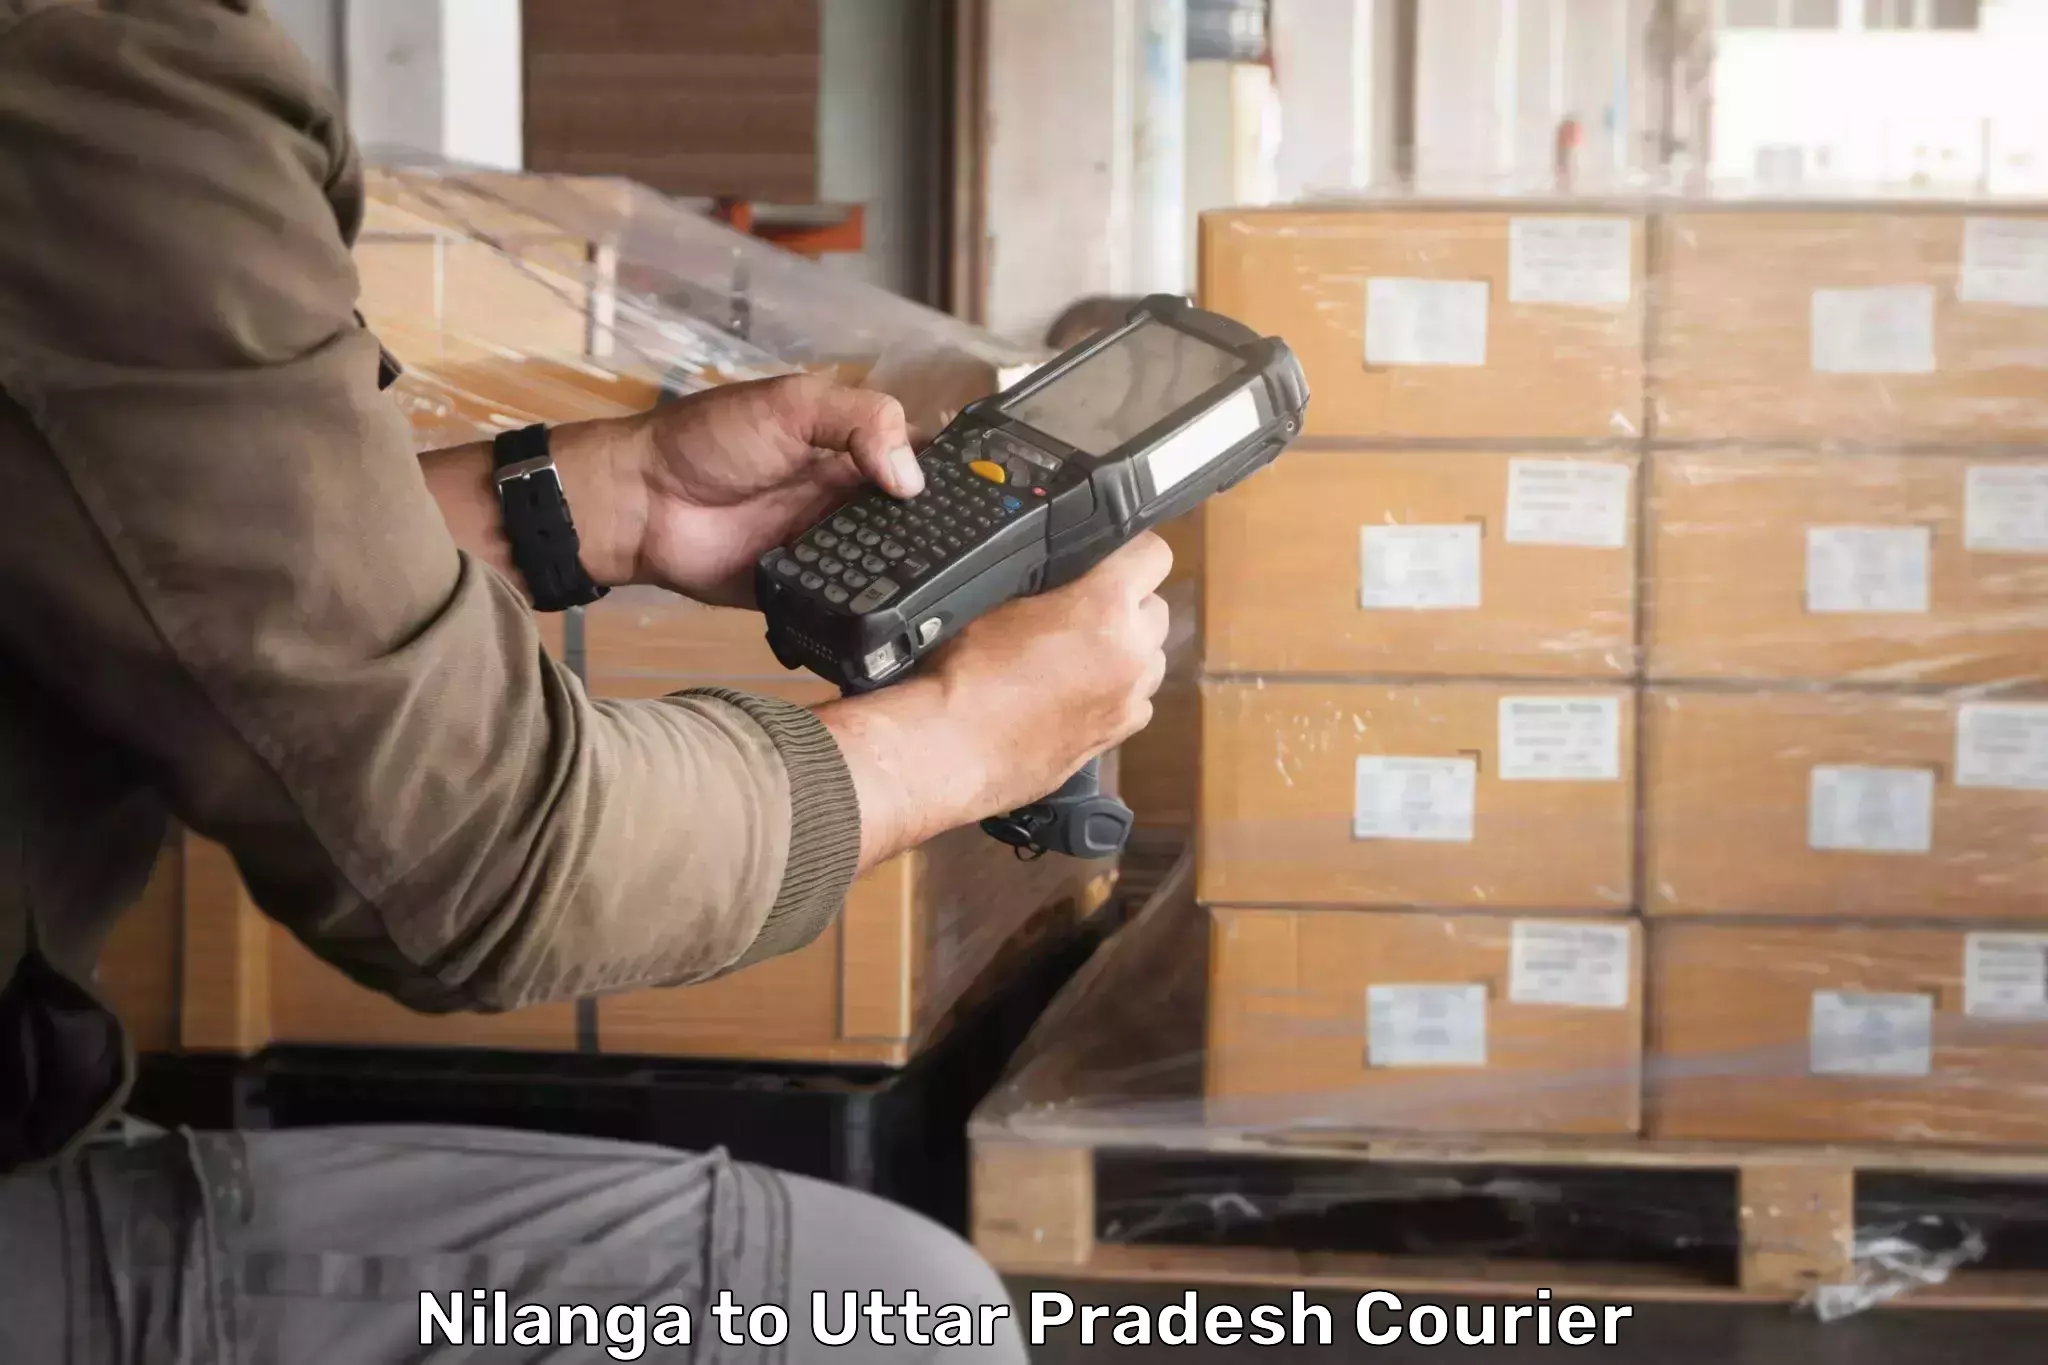 Efficient parcel service Nilanga to Sarai Meer